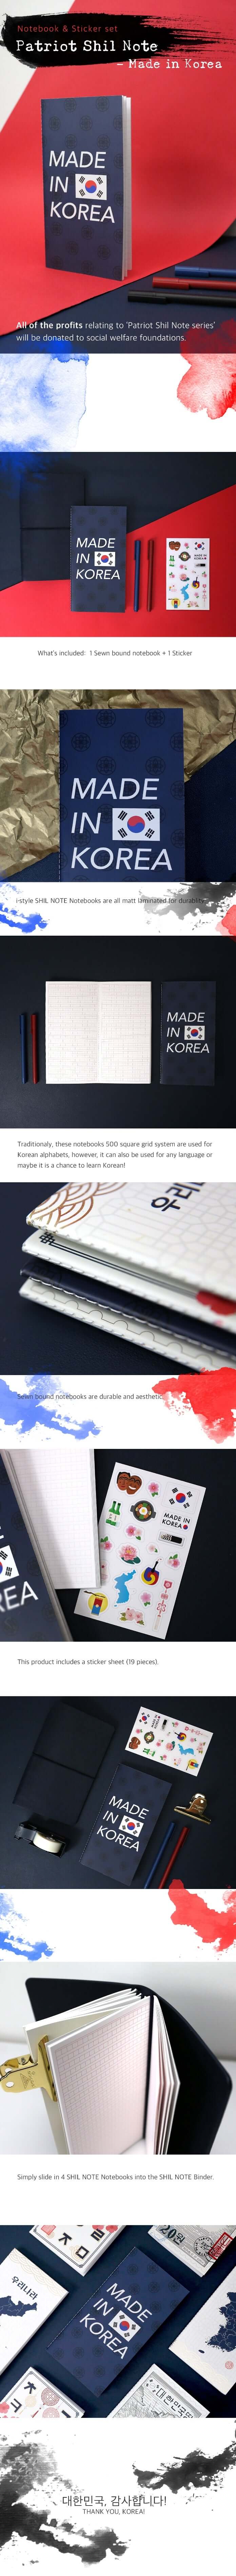 Shil Note Patriot Notebook + مجموعة ملصقات (مصنوعة في كوريا)